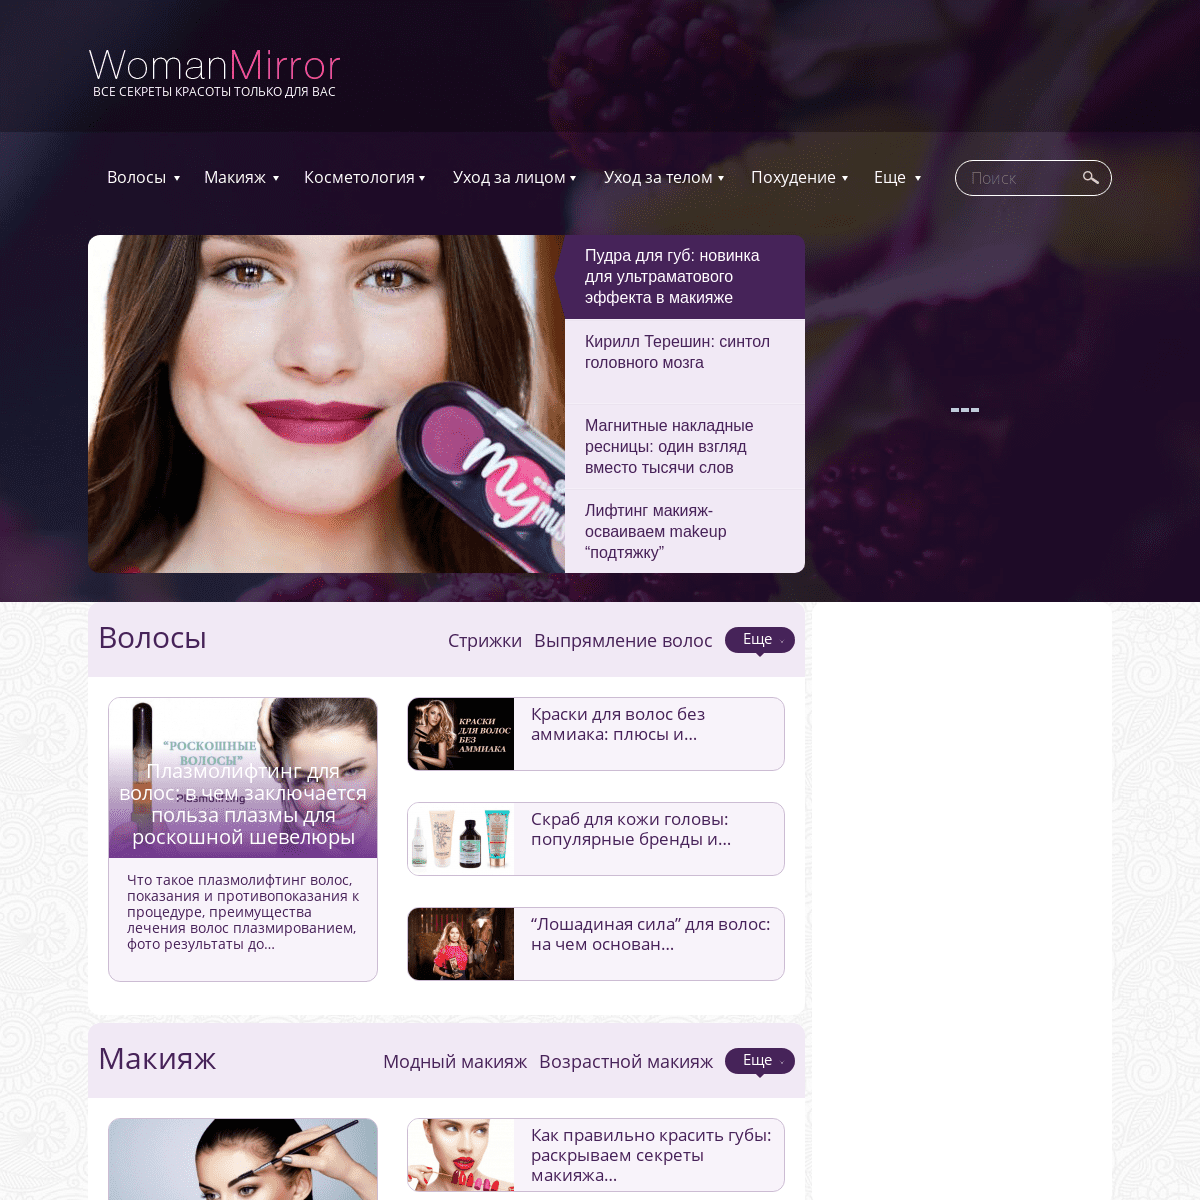 Женский сайт о красоте и преображении внешности